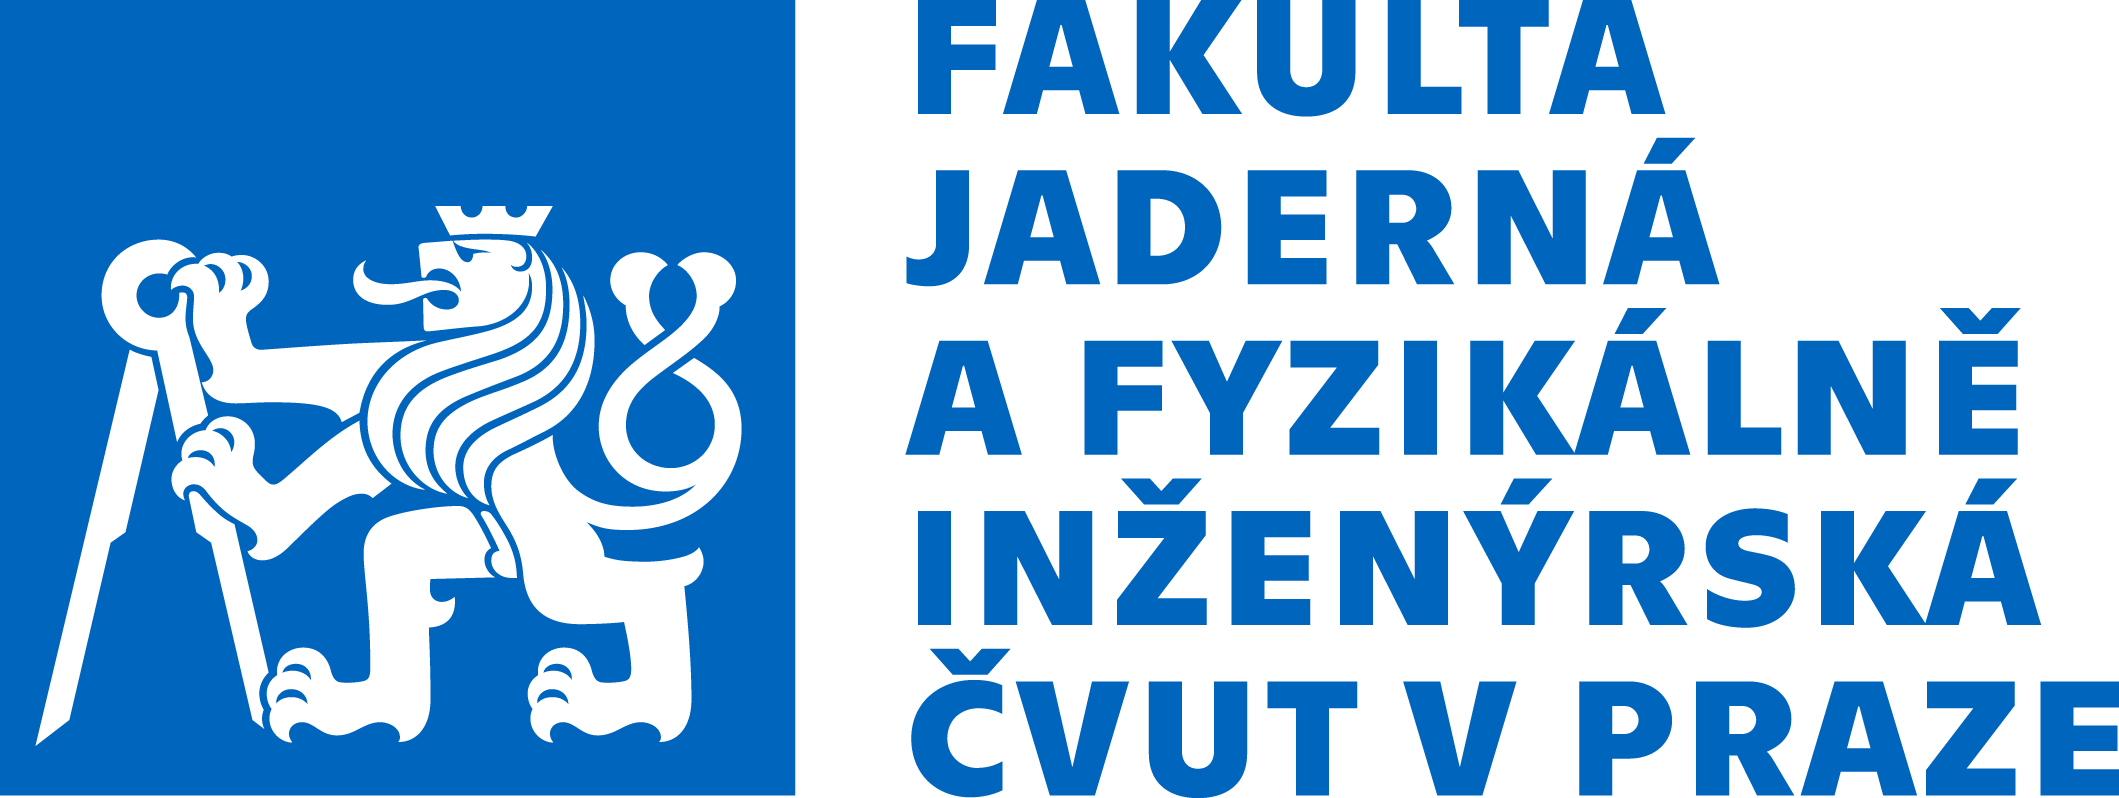 logo_FJFI.jpg